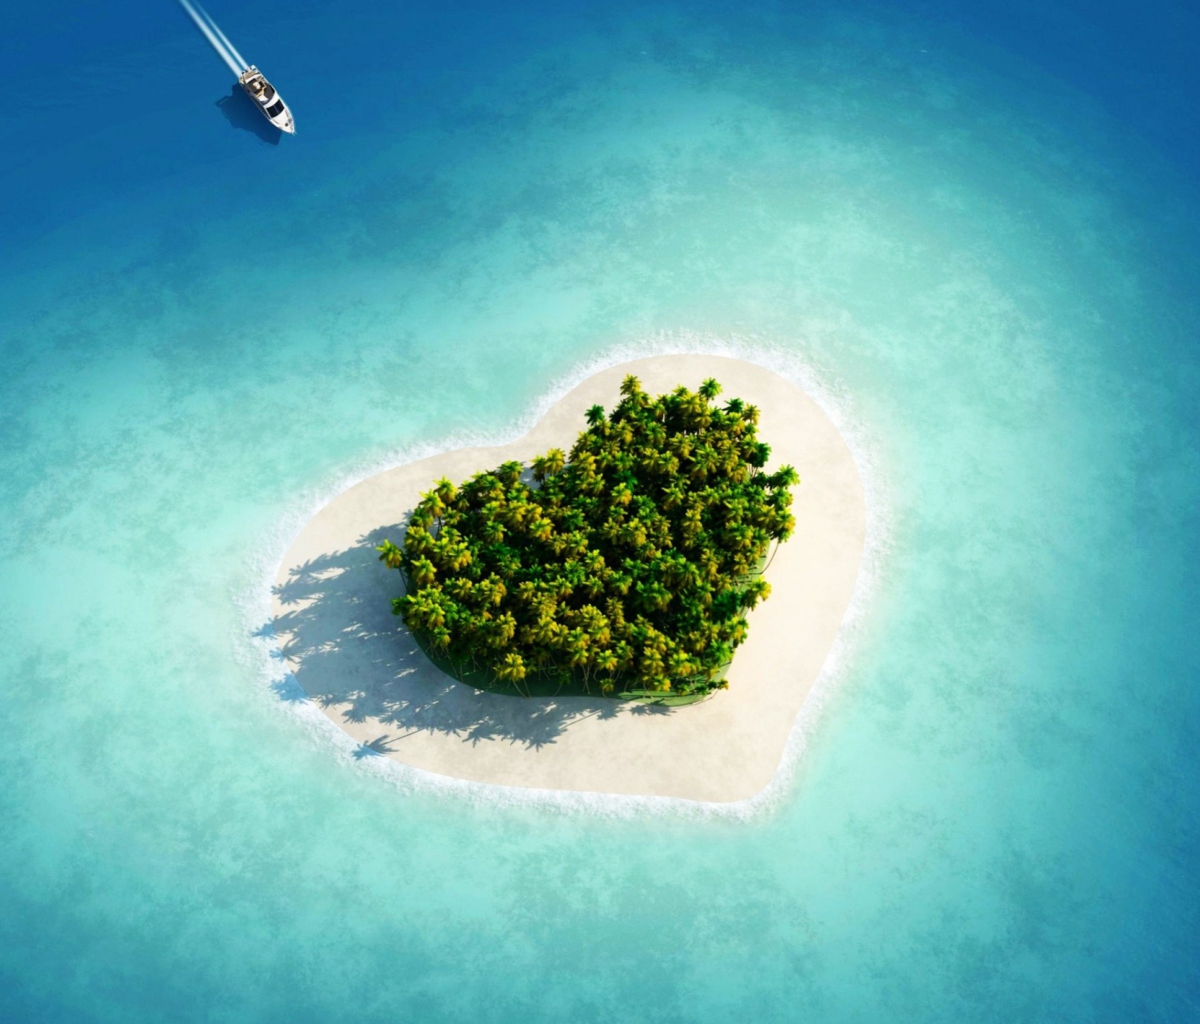 Обои Heart Shaped Tropical Island 1200x1024